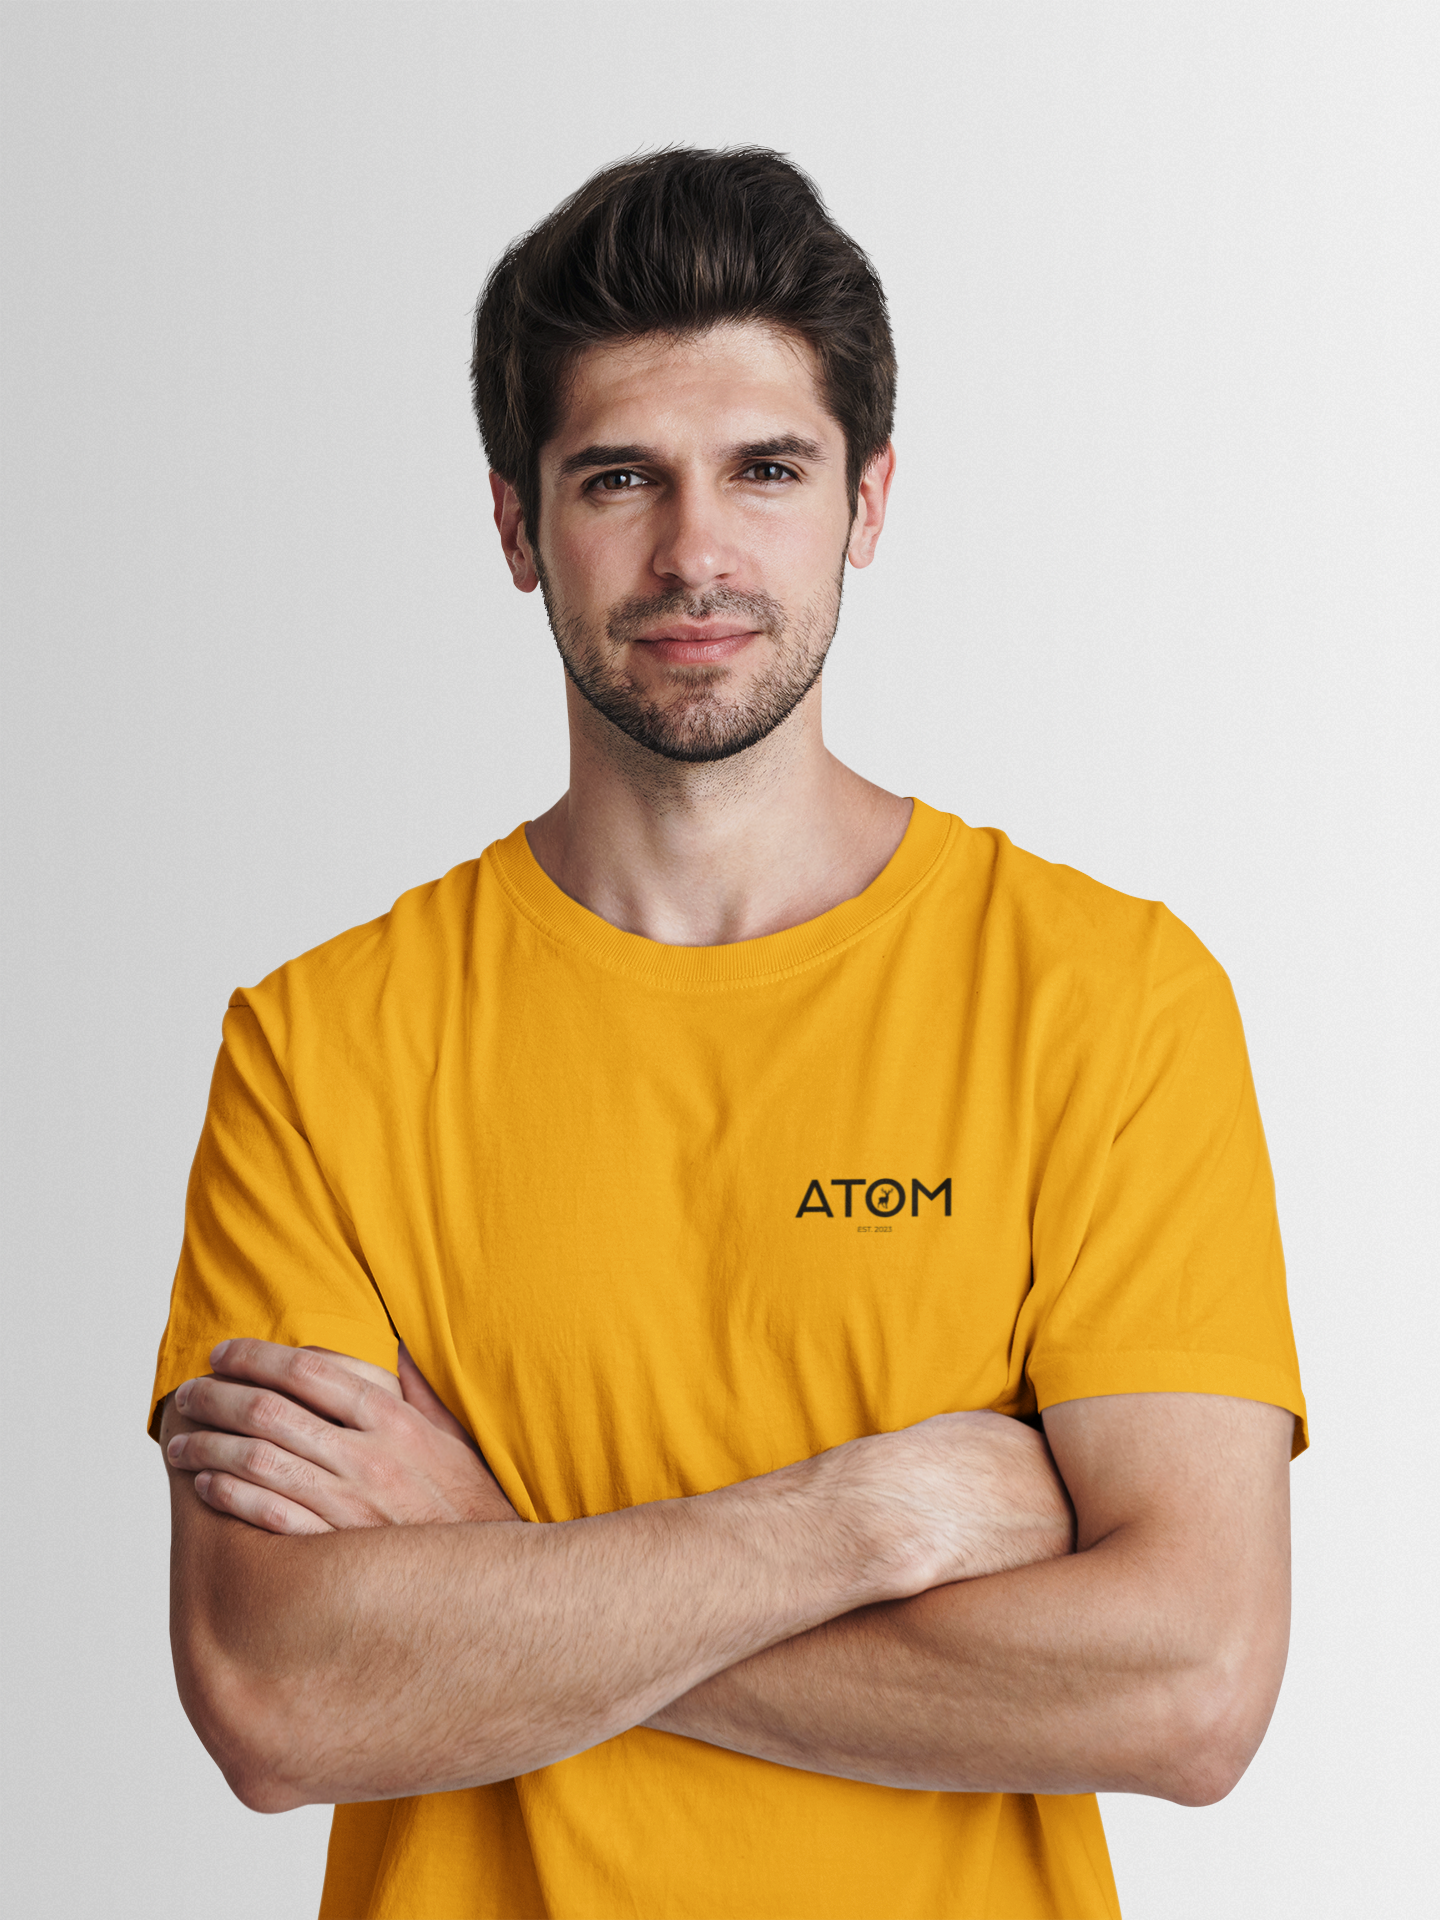 ATOM Logo Basic Mustard Yellow Round Neck T-Shirt for Men.